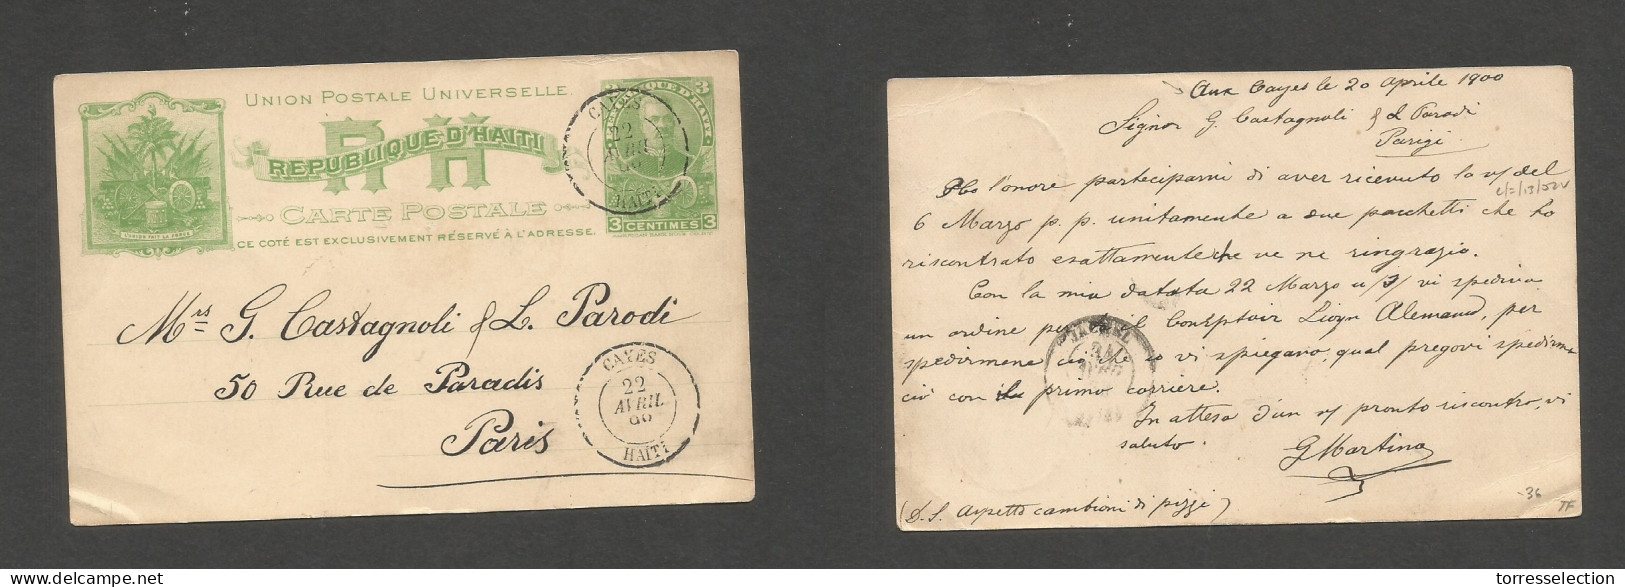 HAITI. 1900 (20 Apr) Aux Cayes - France, Paris. 3c Green Early Stat Card. Fine Used. SALE. - Haití